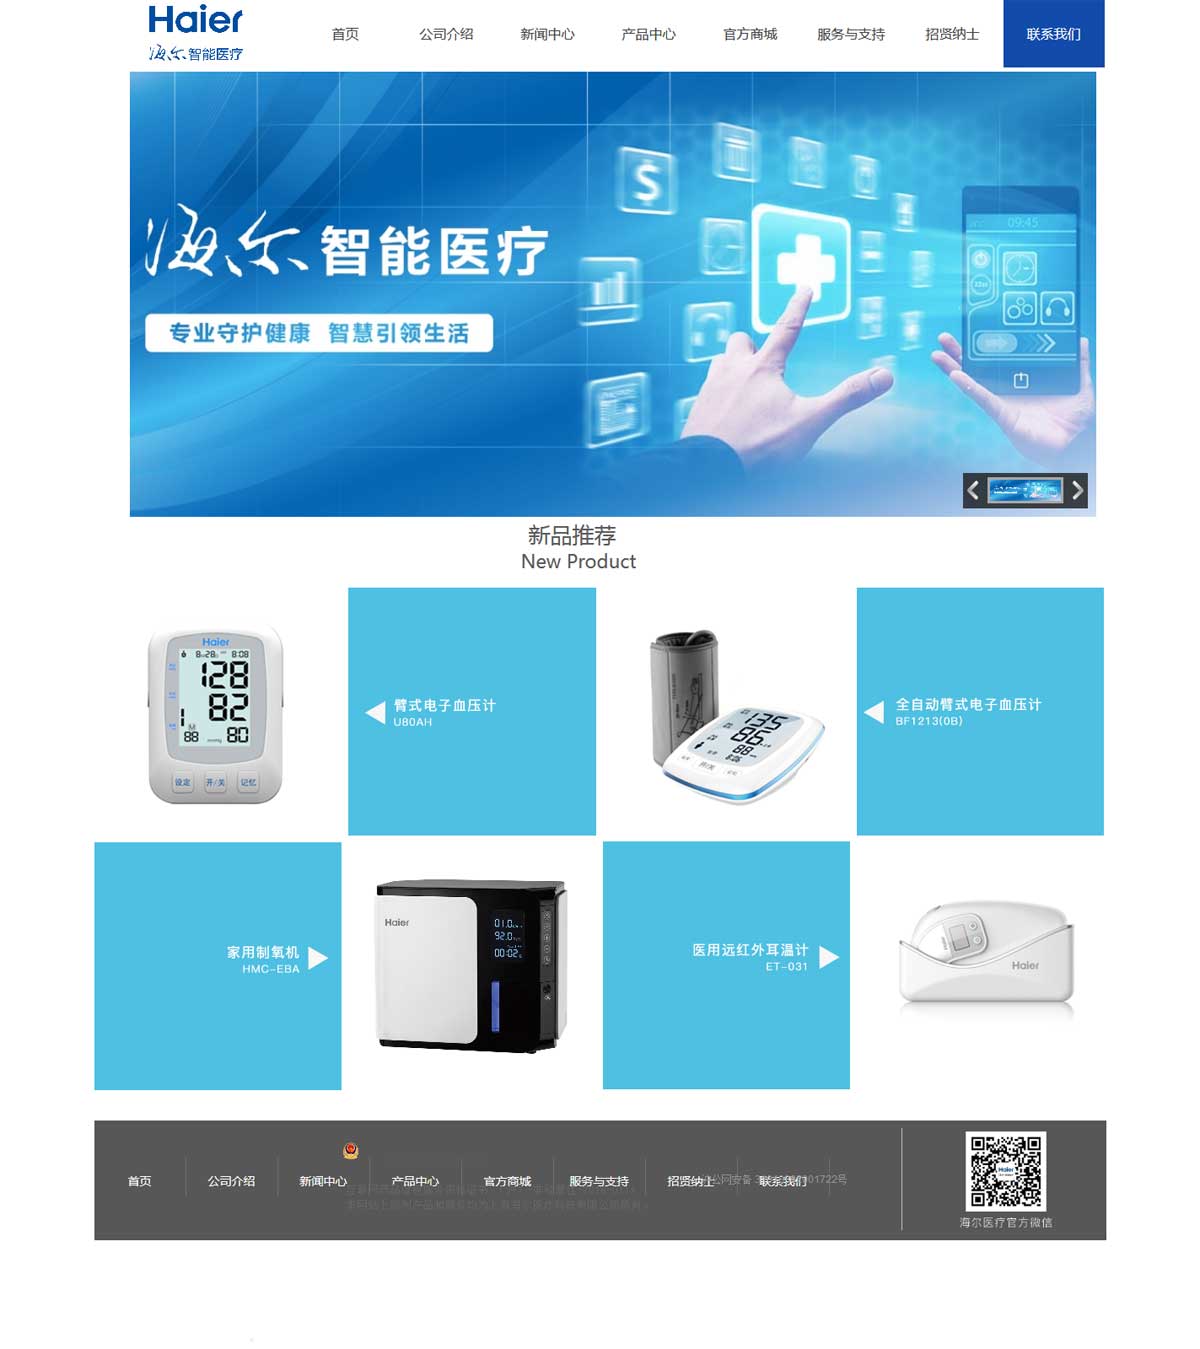 上海海尔医疗科技有限公司1.jpg